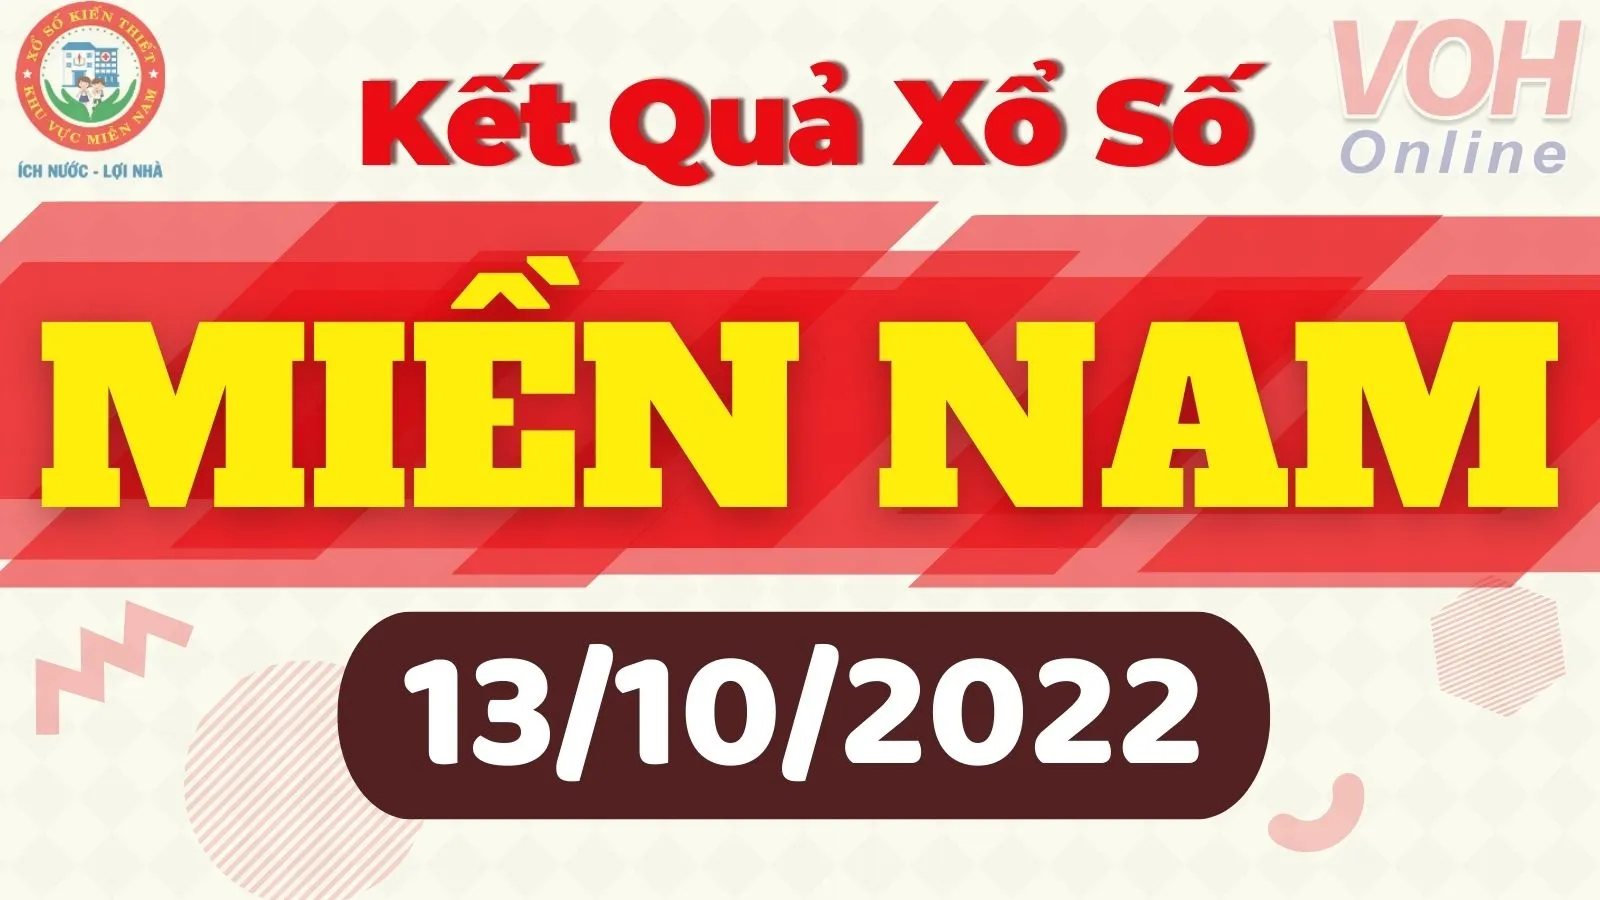 Xổ số miền Nam hôm nay - XSMN 13/10 - SXMN 13/10/2022 - Kết quả xổ số hôm nay ngày 13 tháng 10